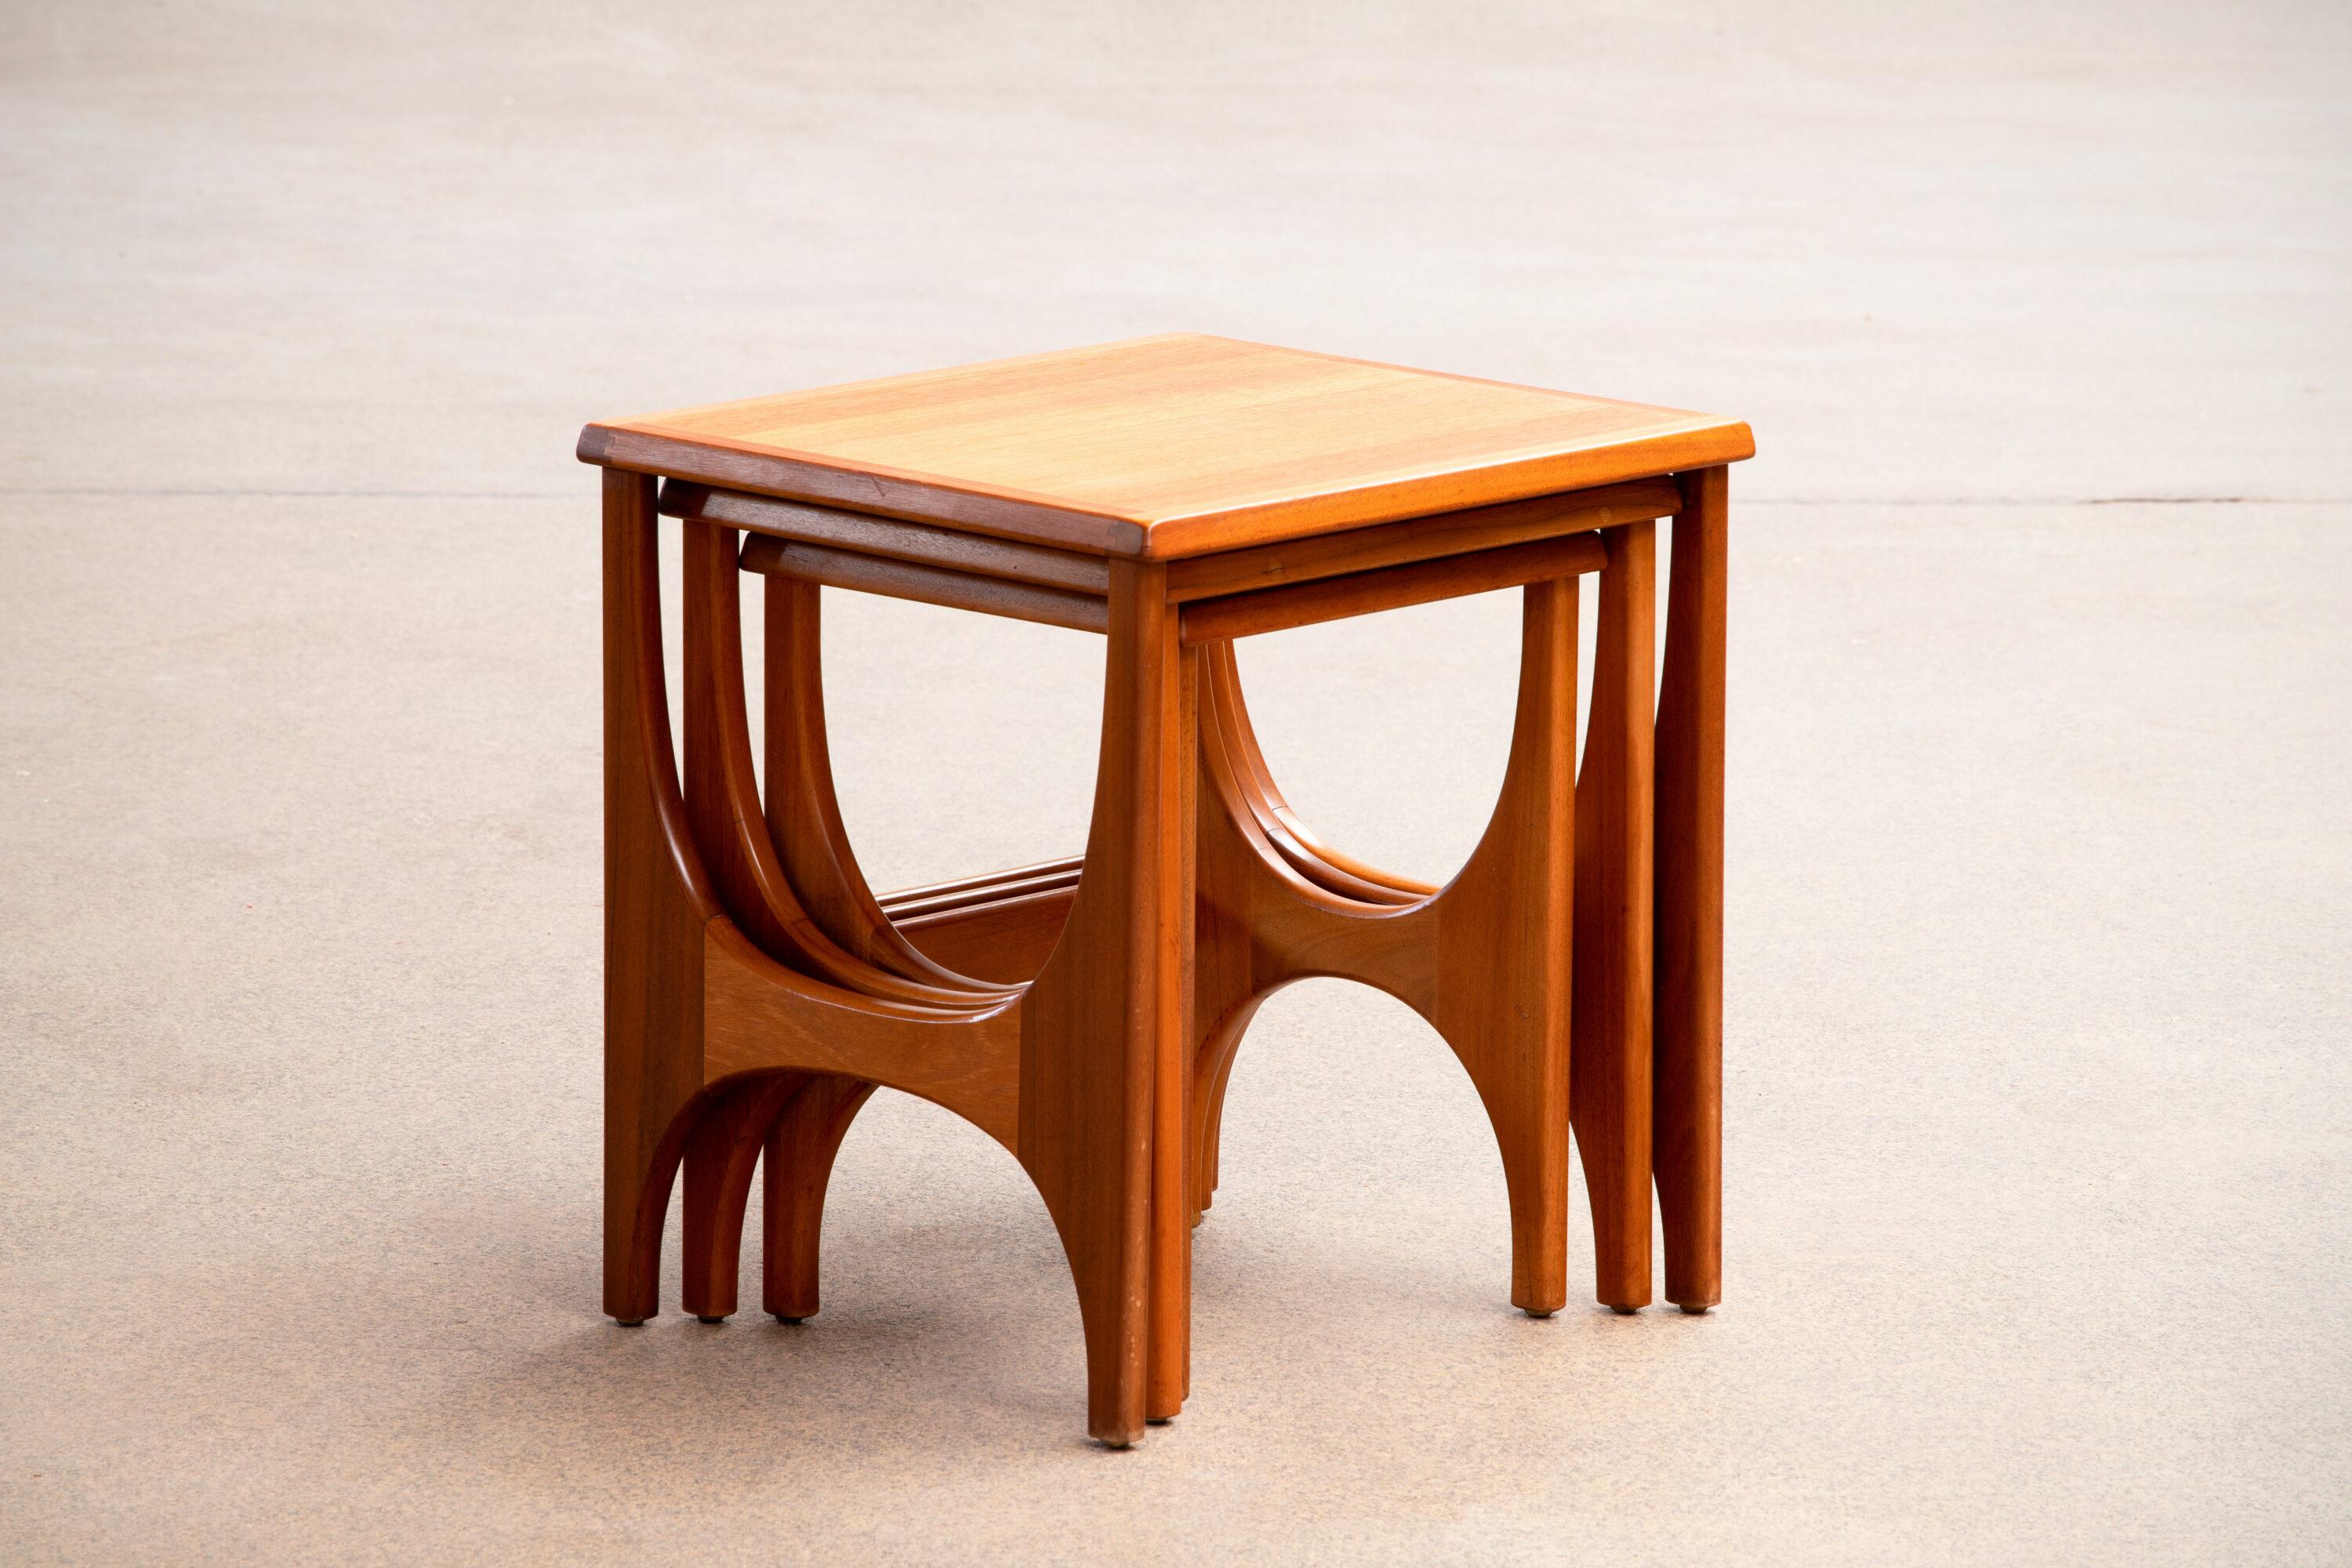 Teak midcentury nesting tables in teak, designed by Nathan, UK, 1960s.